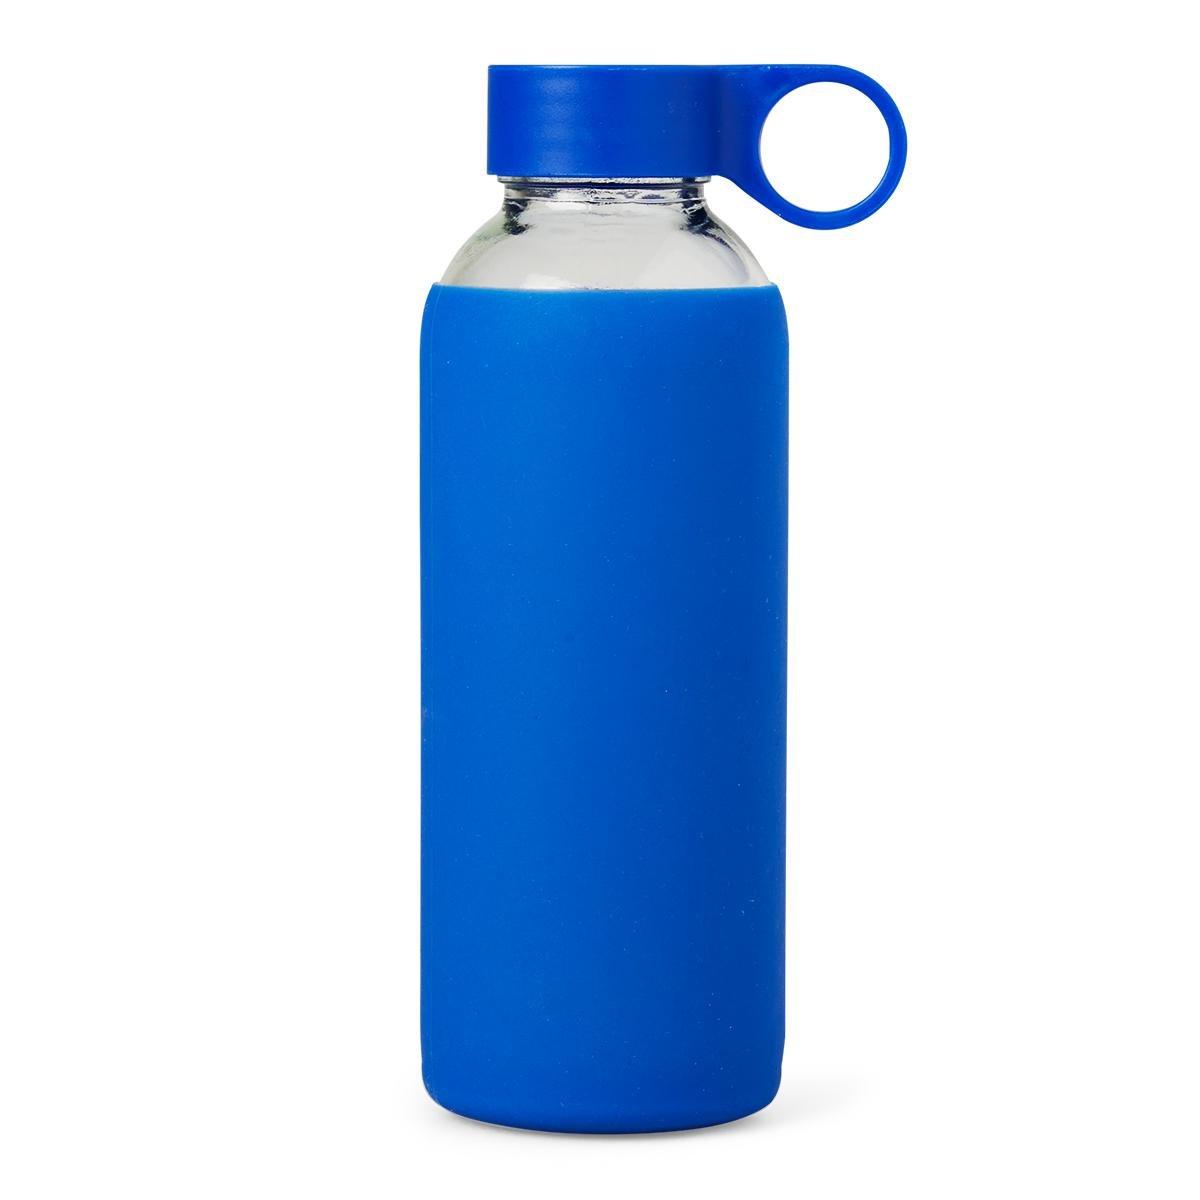 Blue drinking bottle